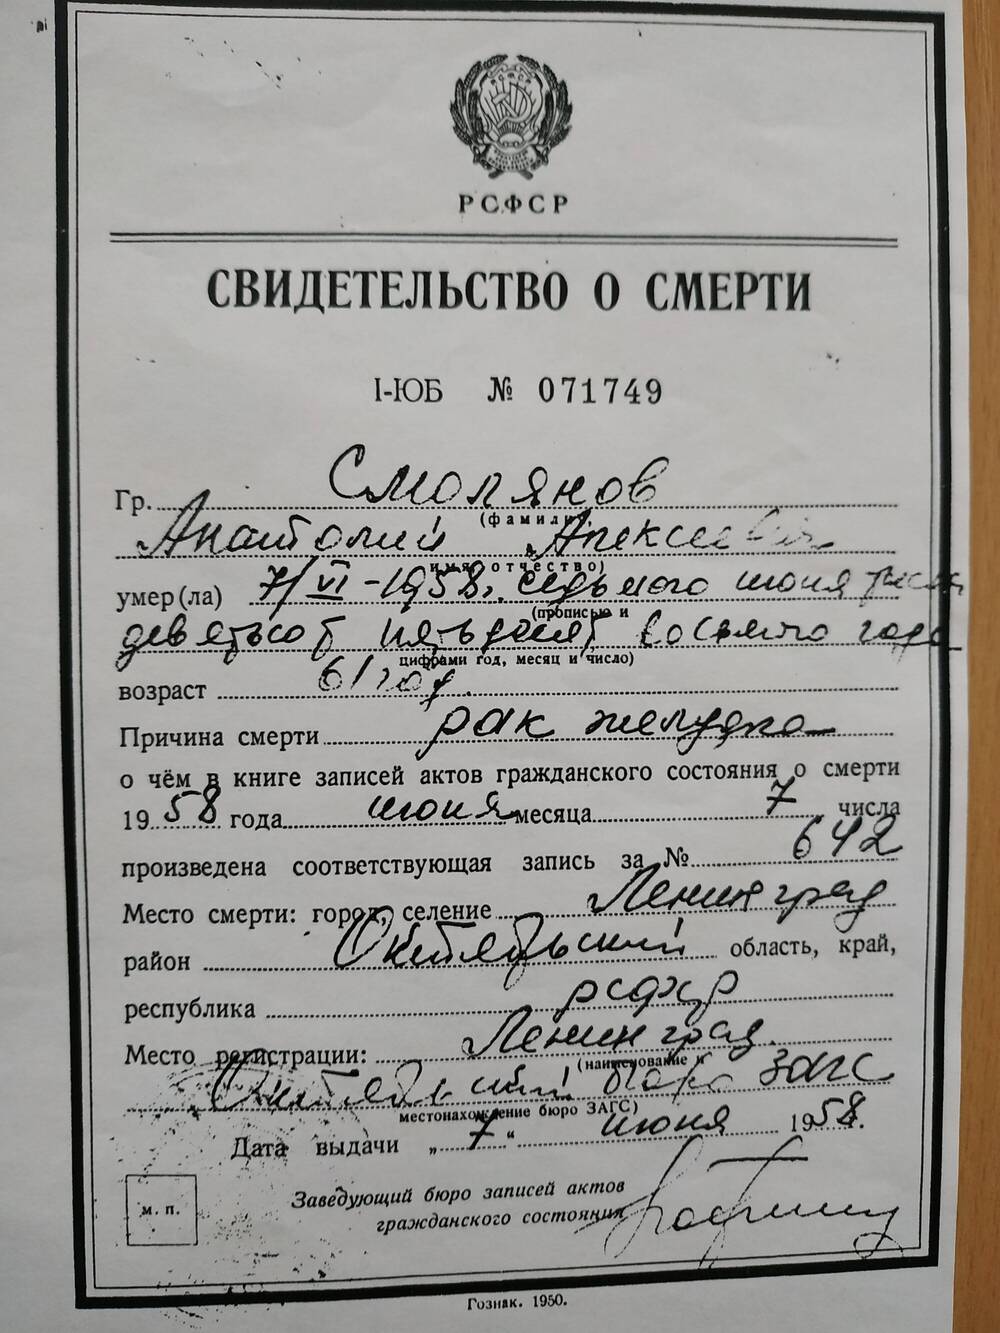 Копия свидетельства о смерти Смолянова Анатолия Алексеевича, № 071749 от 07.06.1958 г.